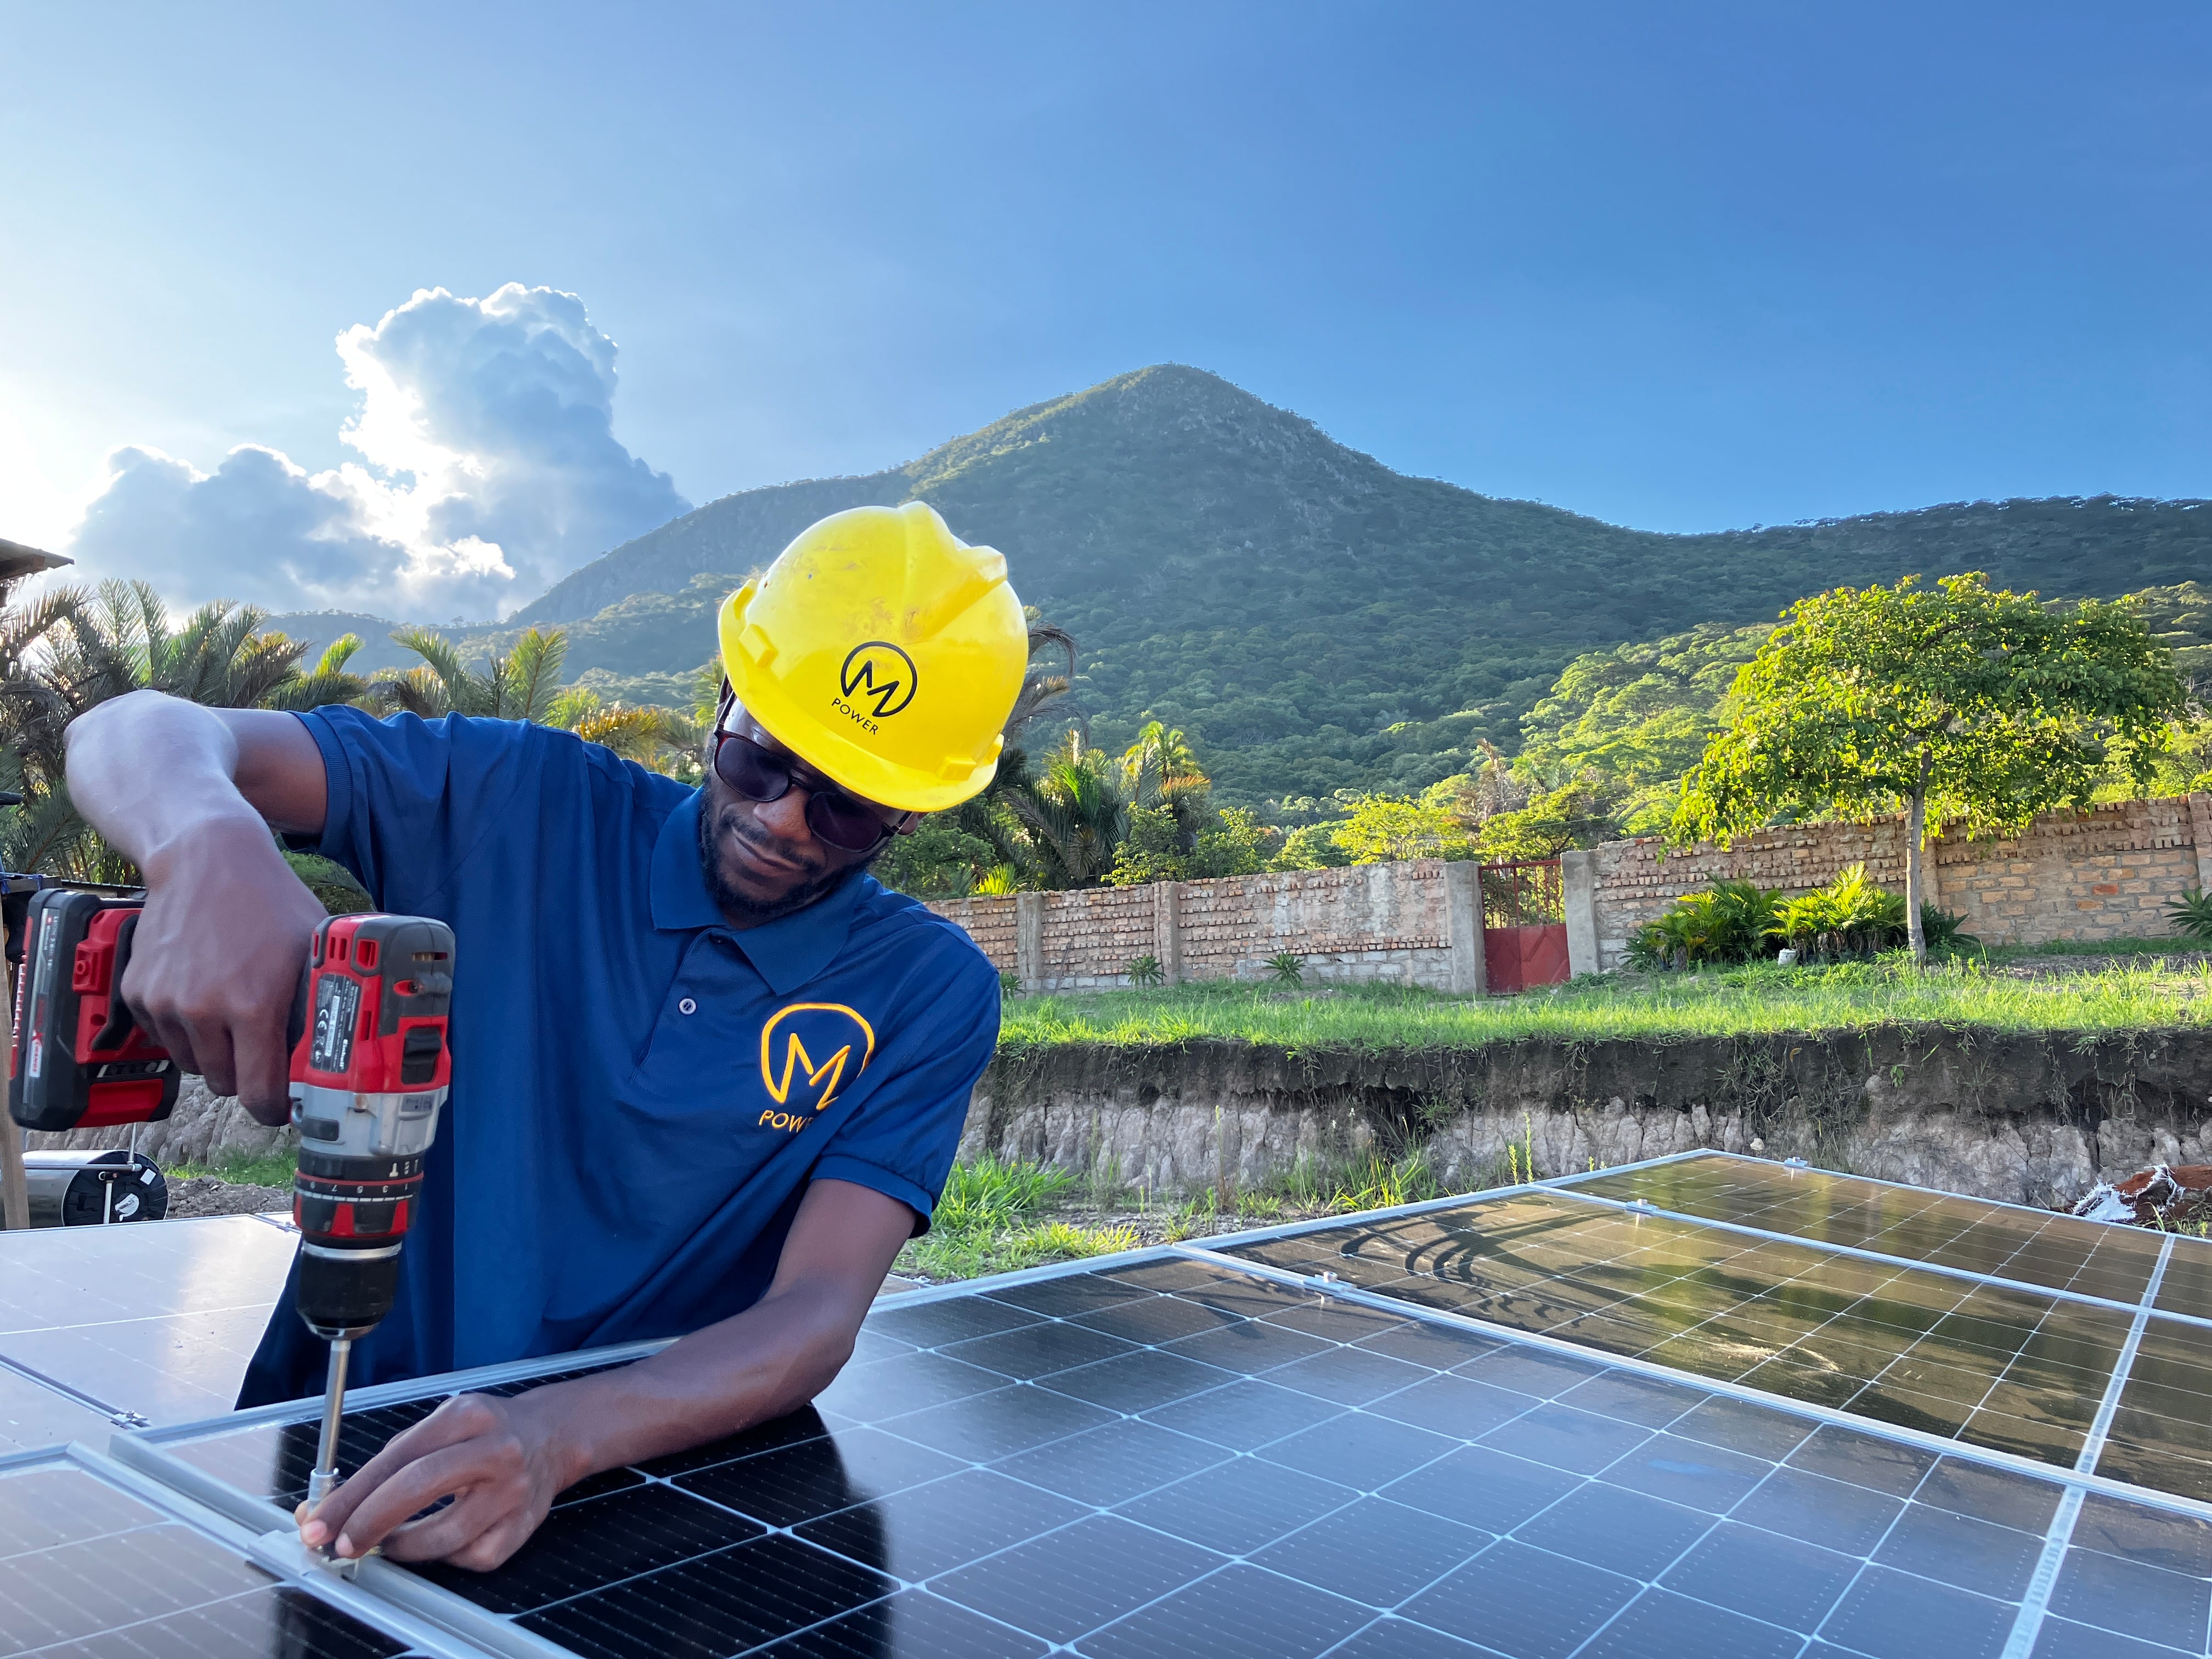 MPower – Solarenergie in Afrika: Werde Teil des Wandels